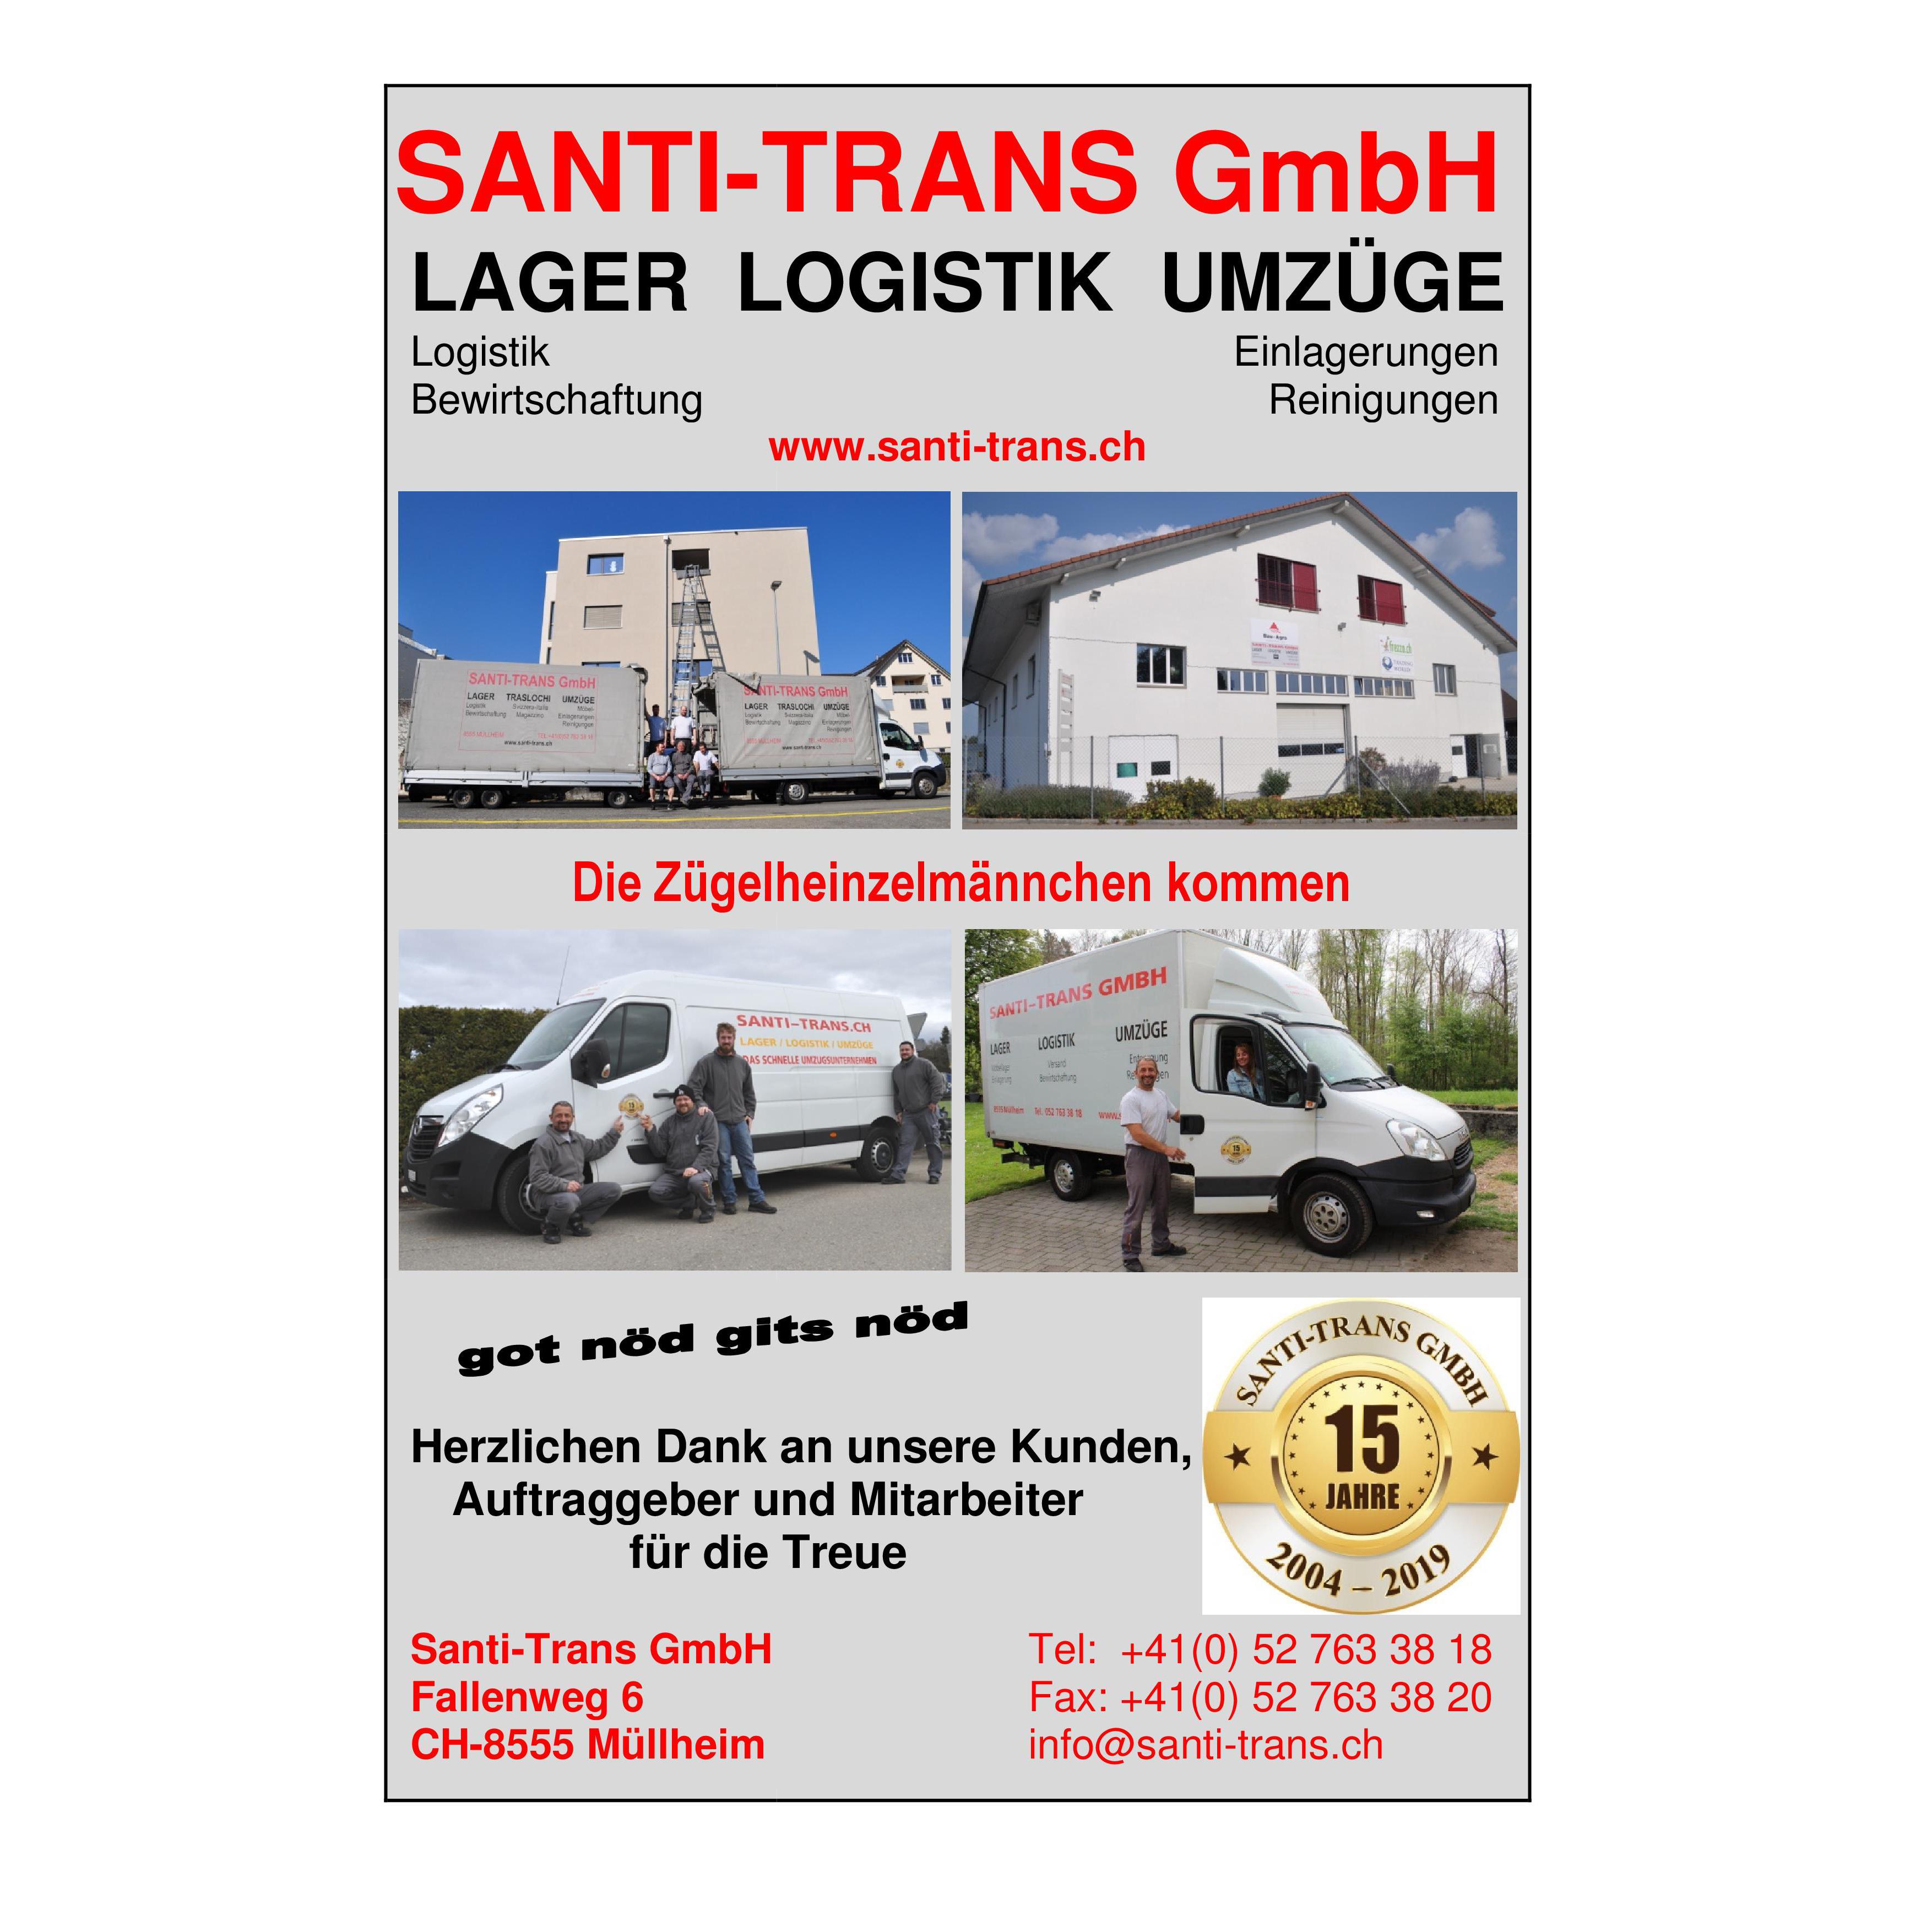 Santi-Trans GmbH